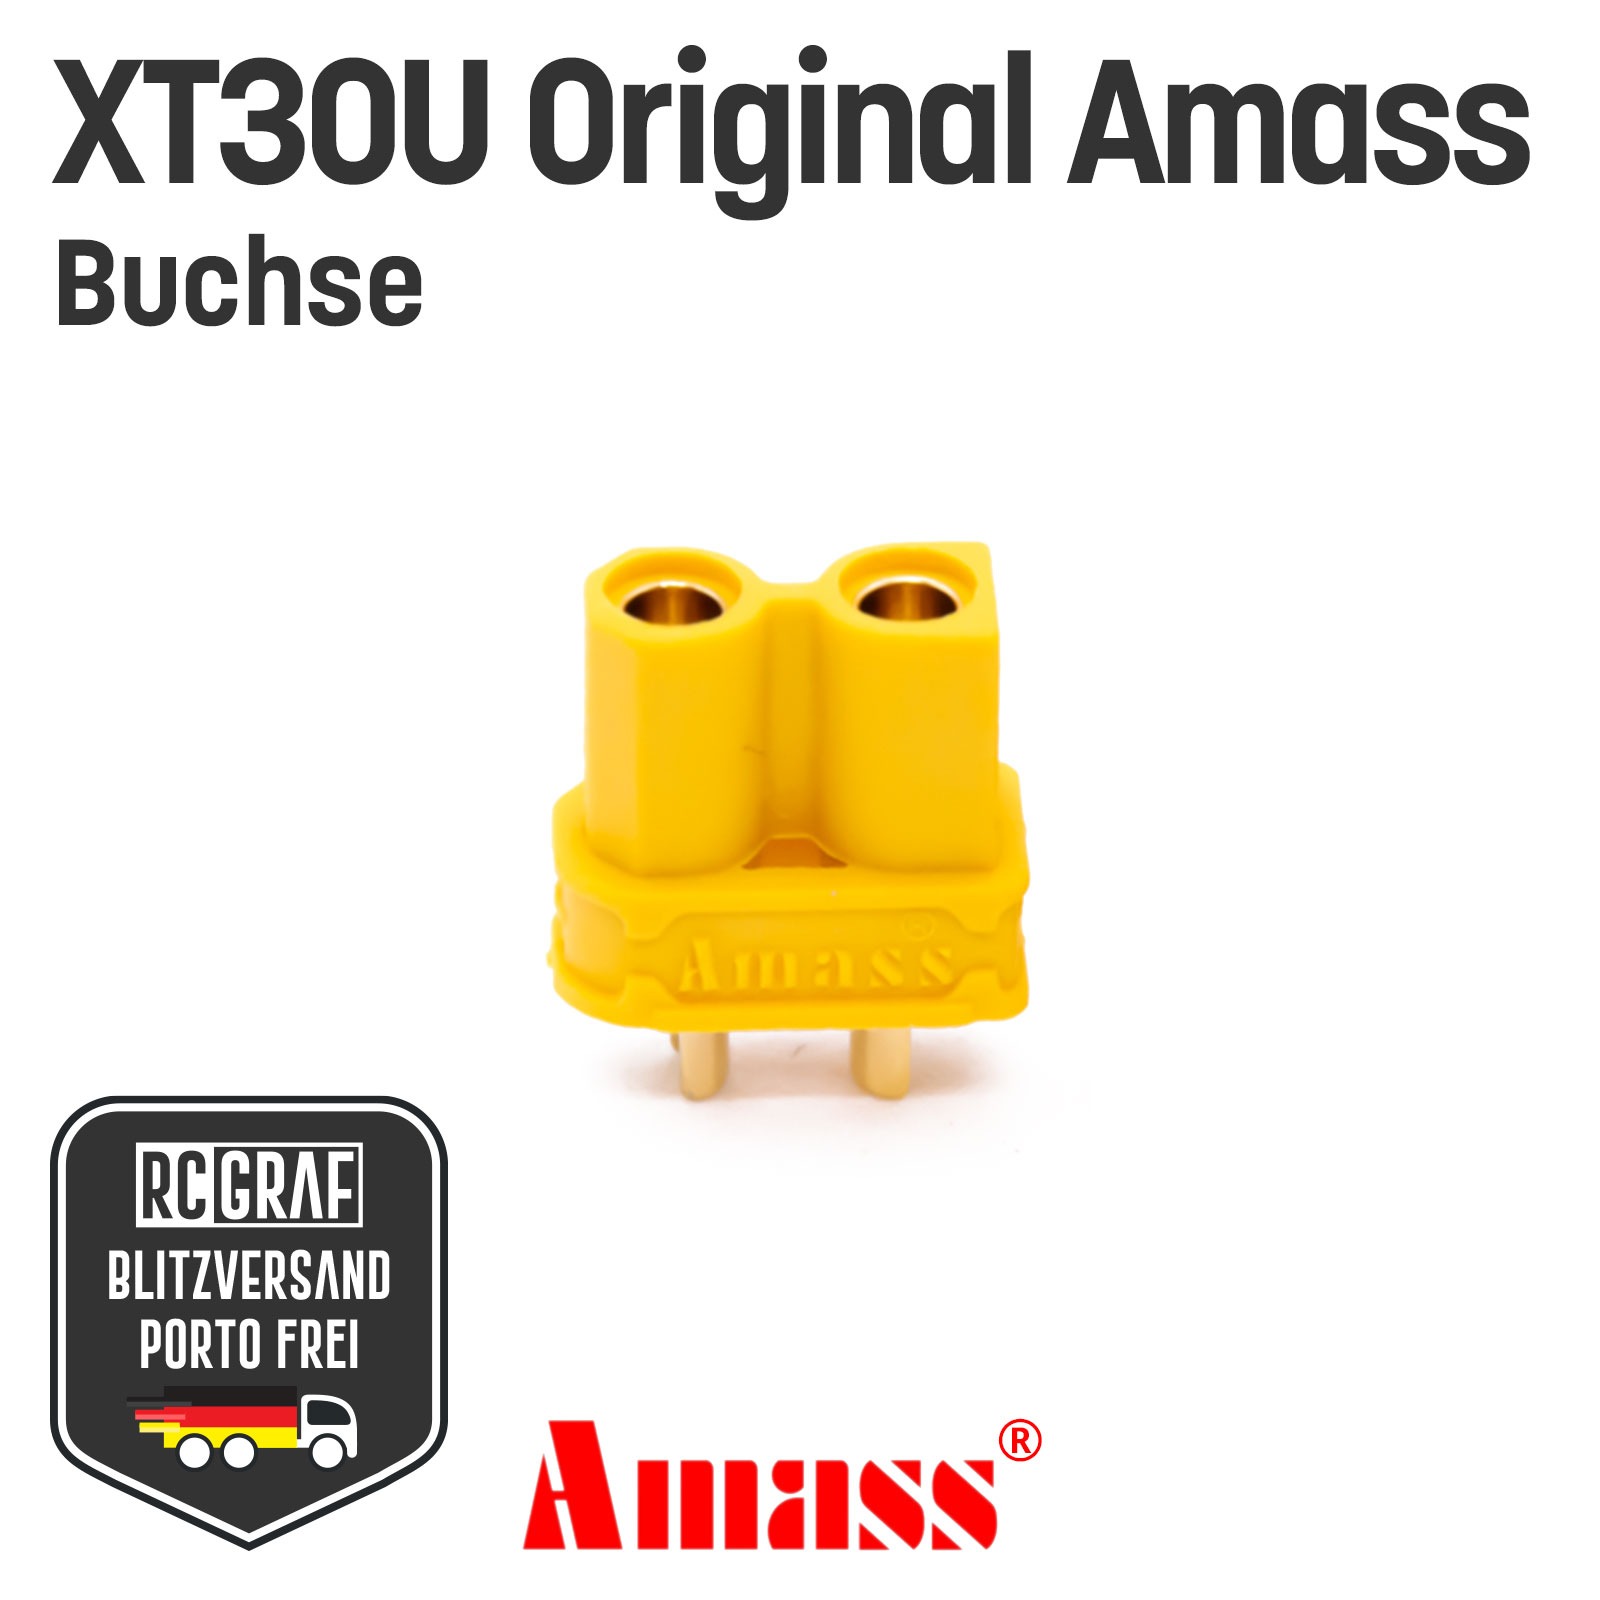 20 Buchsen XT30U Original Amass 2